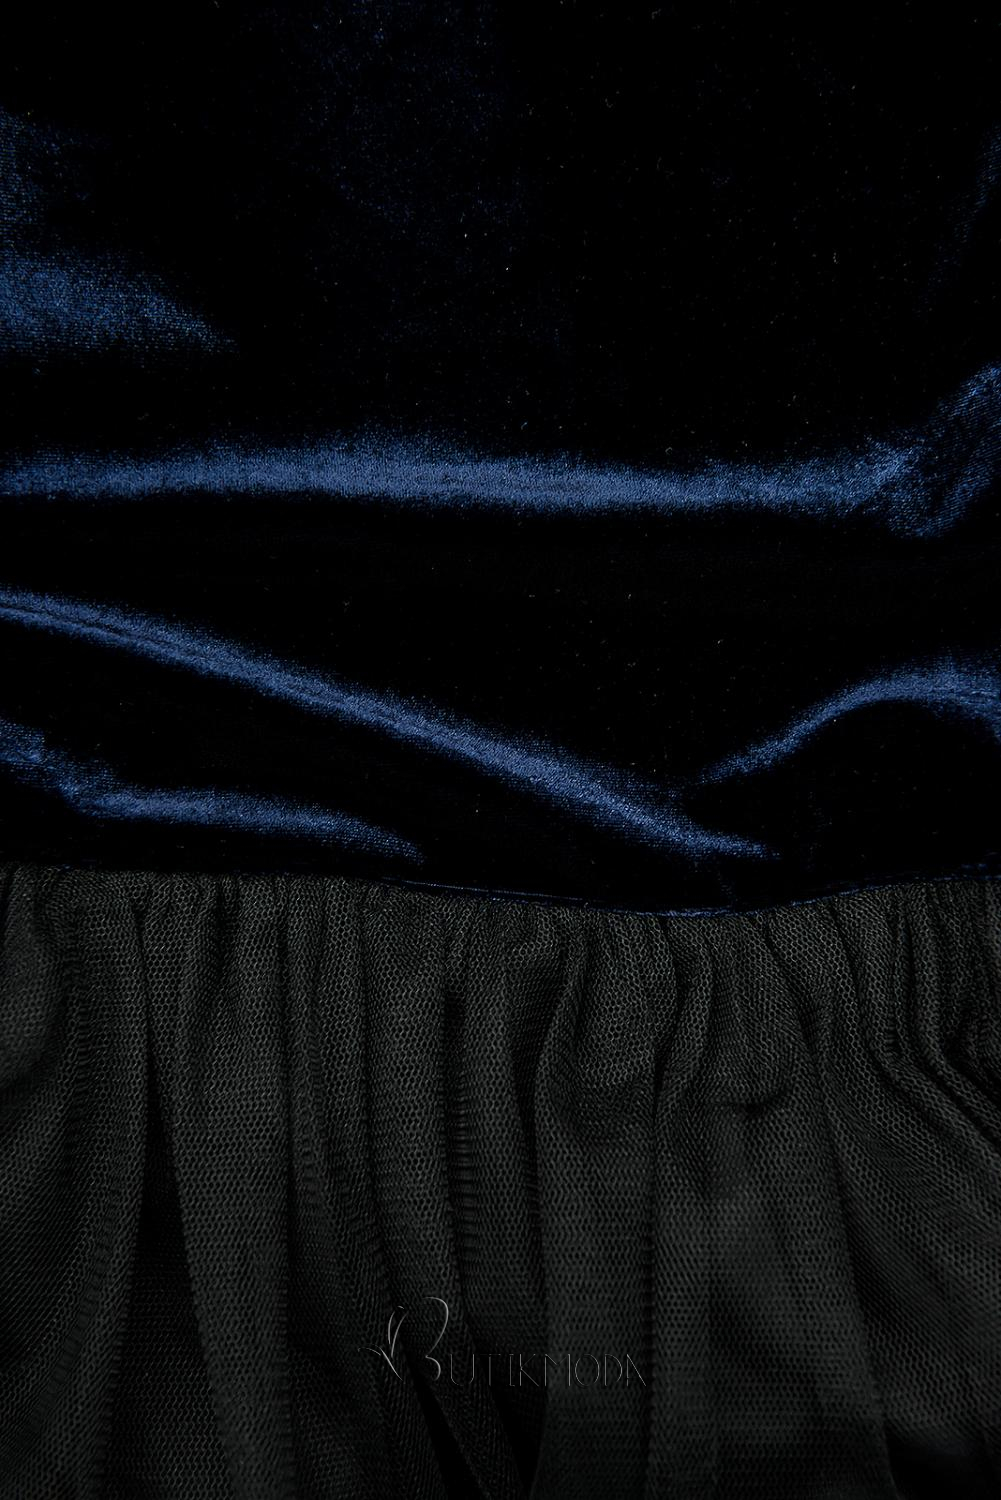 Kleid mit Tüllrock dunkelblau